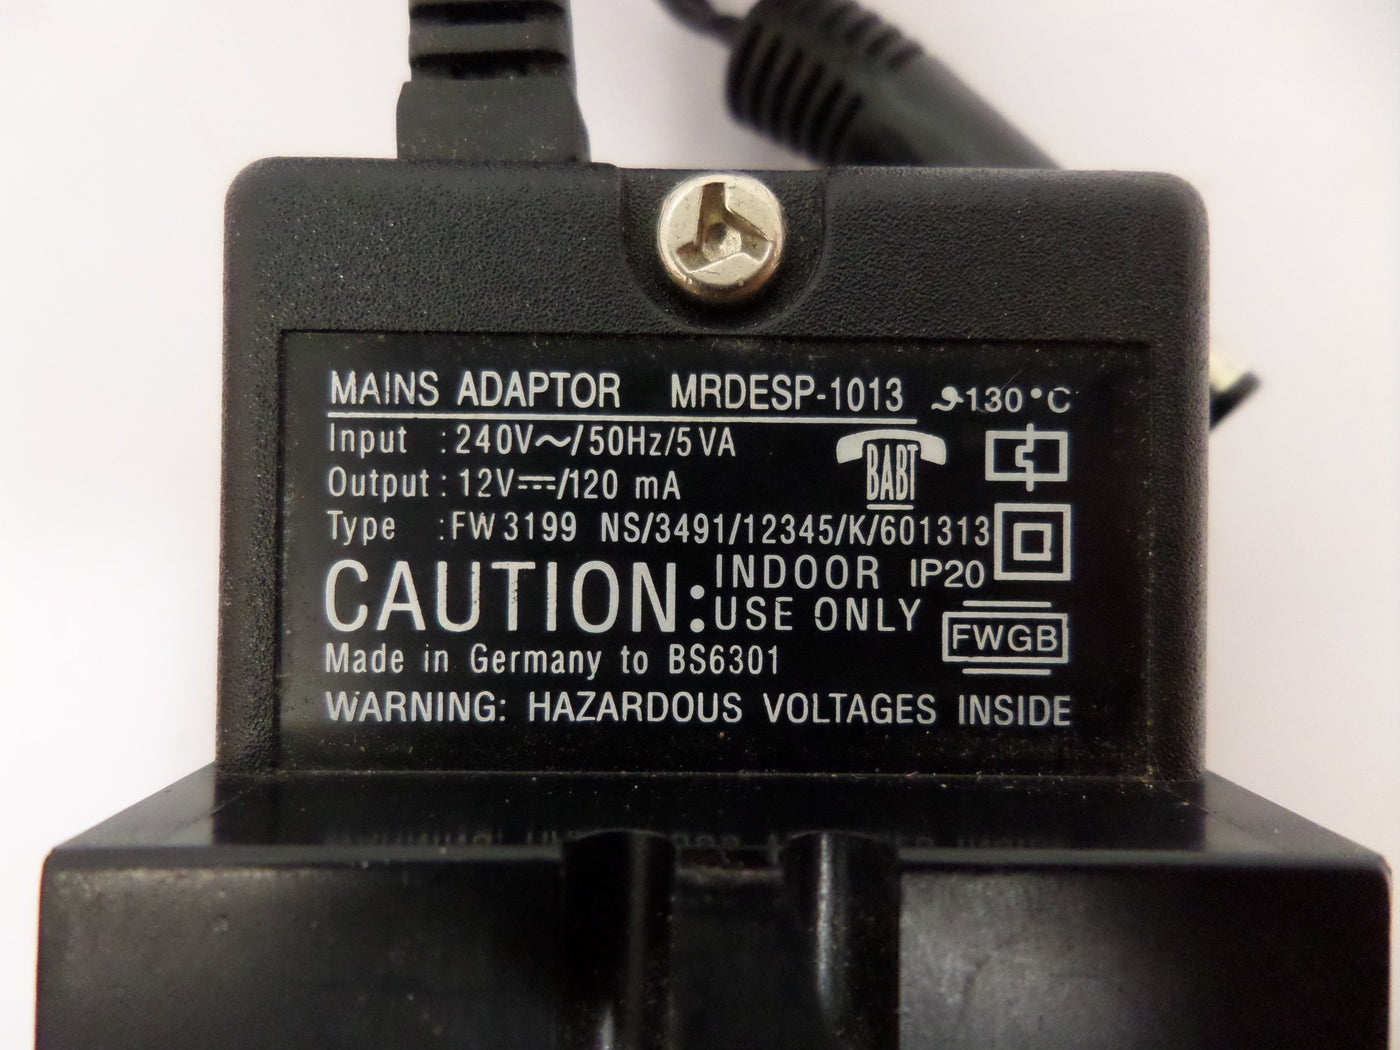 PR25820_FW3199_NEC 12V Mains Adaptor MRDESP-1013 - Image2